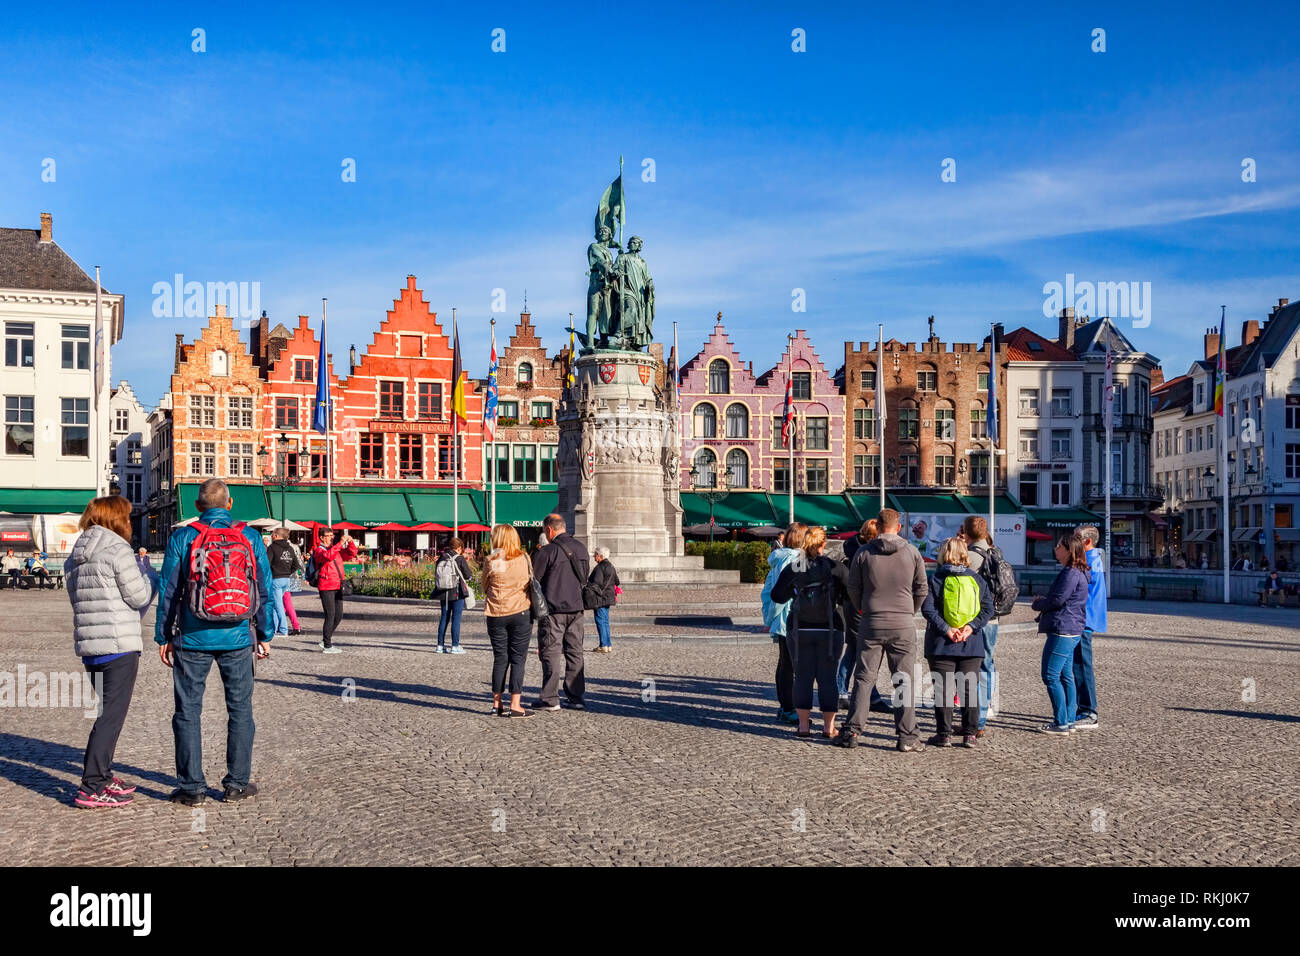 25. September 2018: Brügge, Belgien - Touristen auf dem Marktplatz an einem sonnigen Nachmittag. Stockfoto